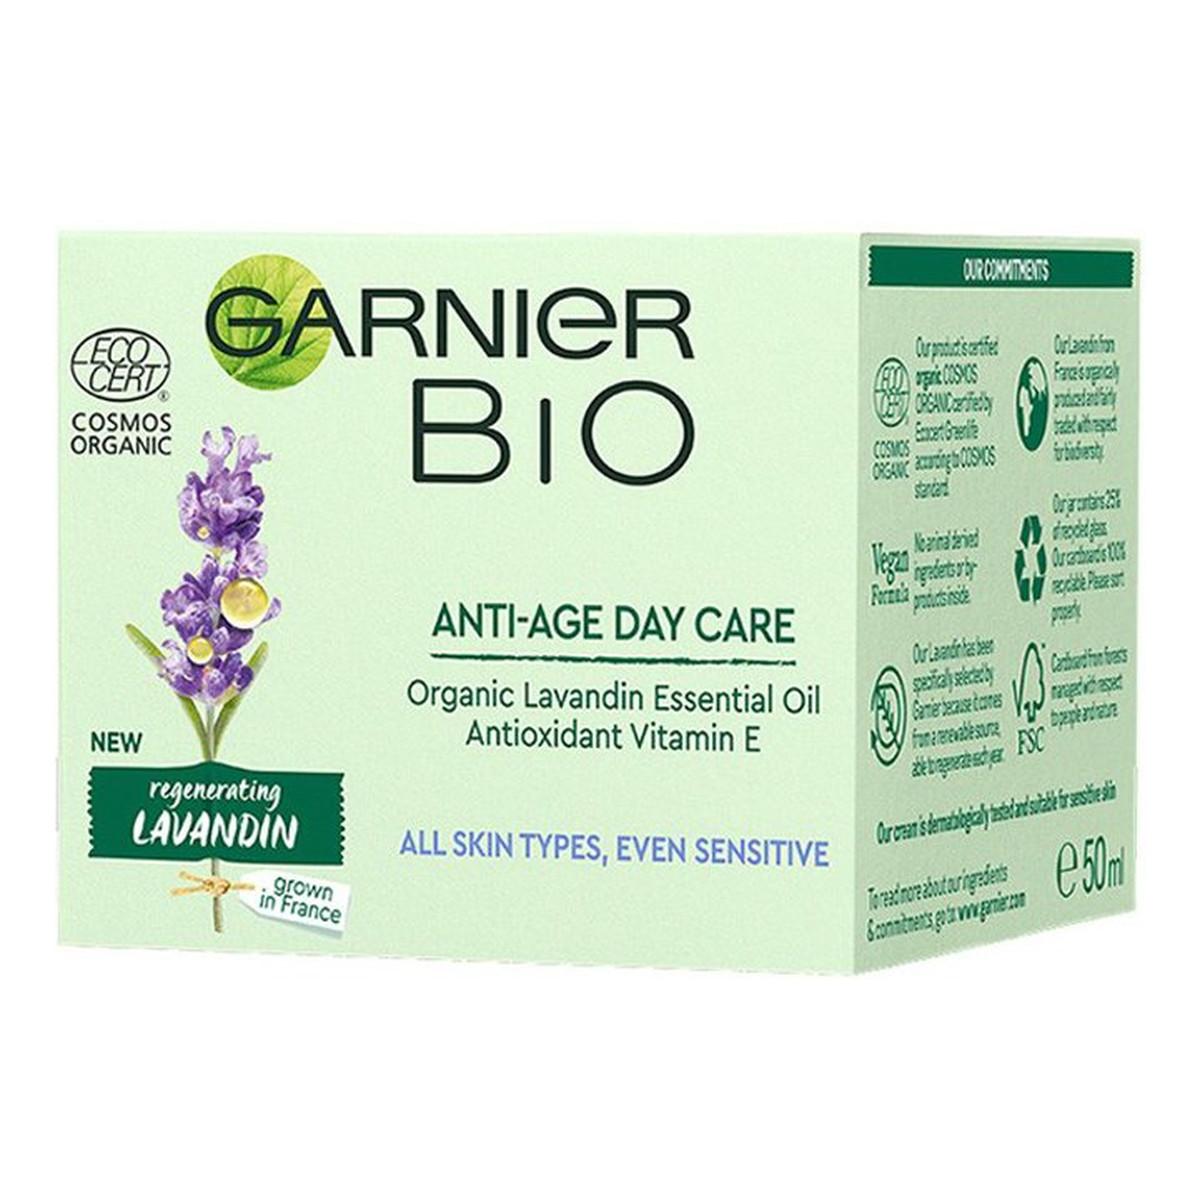 Garnier Bio Regenerating Lavandin Anti-Age Day Care przeciwzmarszczkowy krem na dzień 50ml